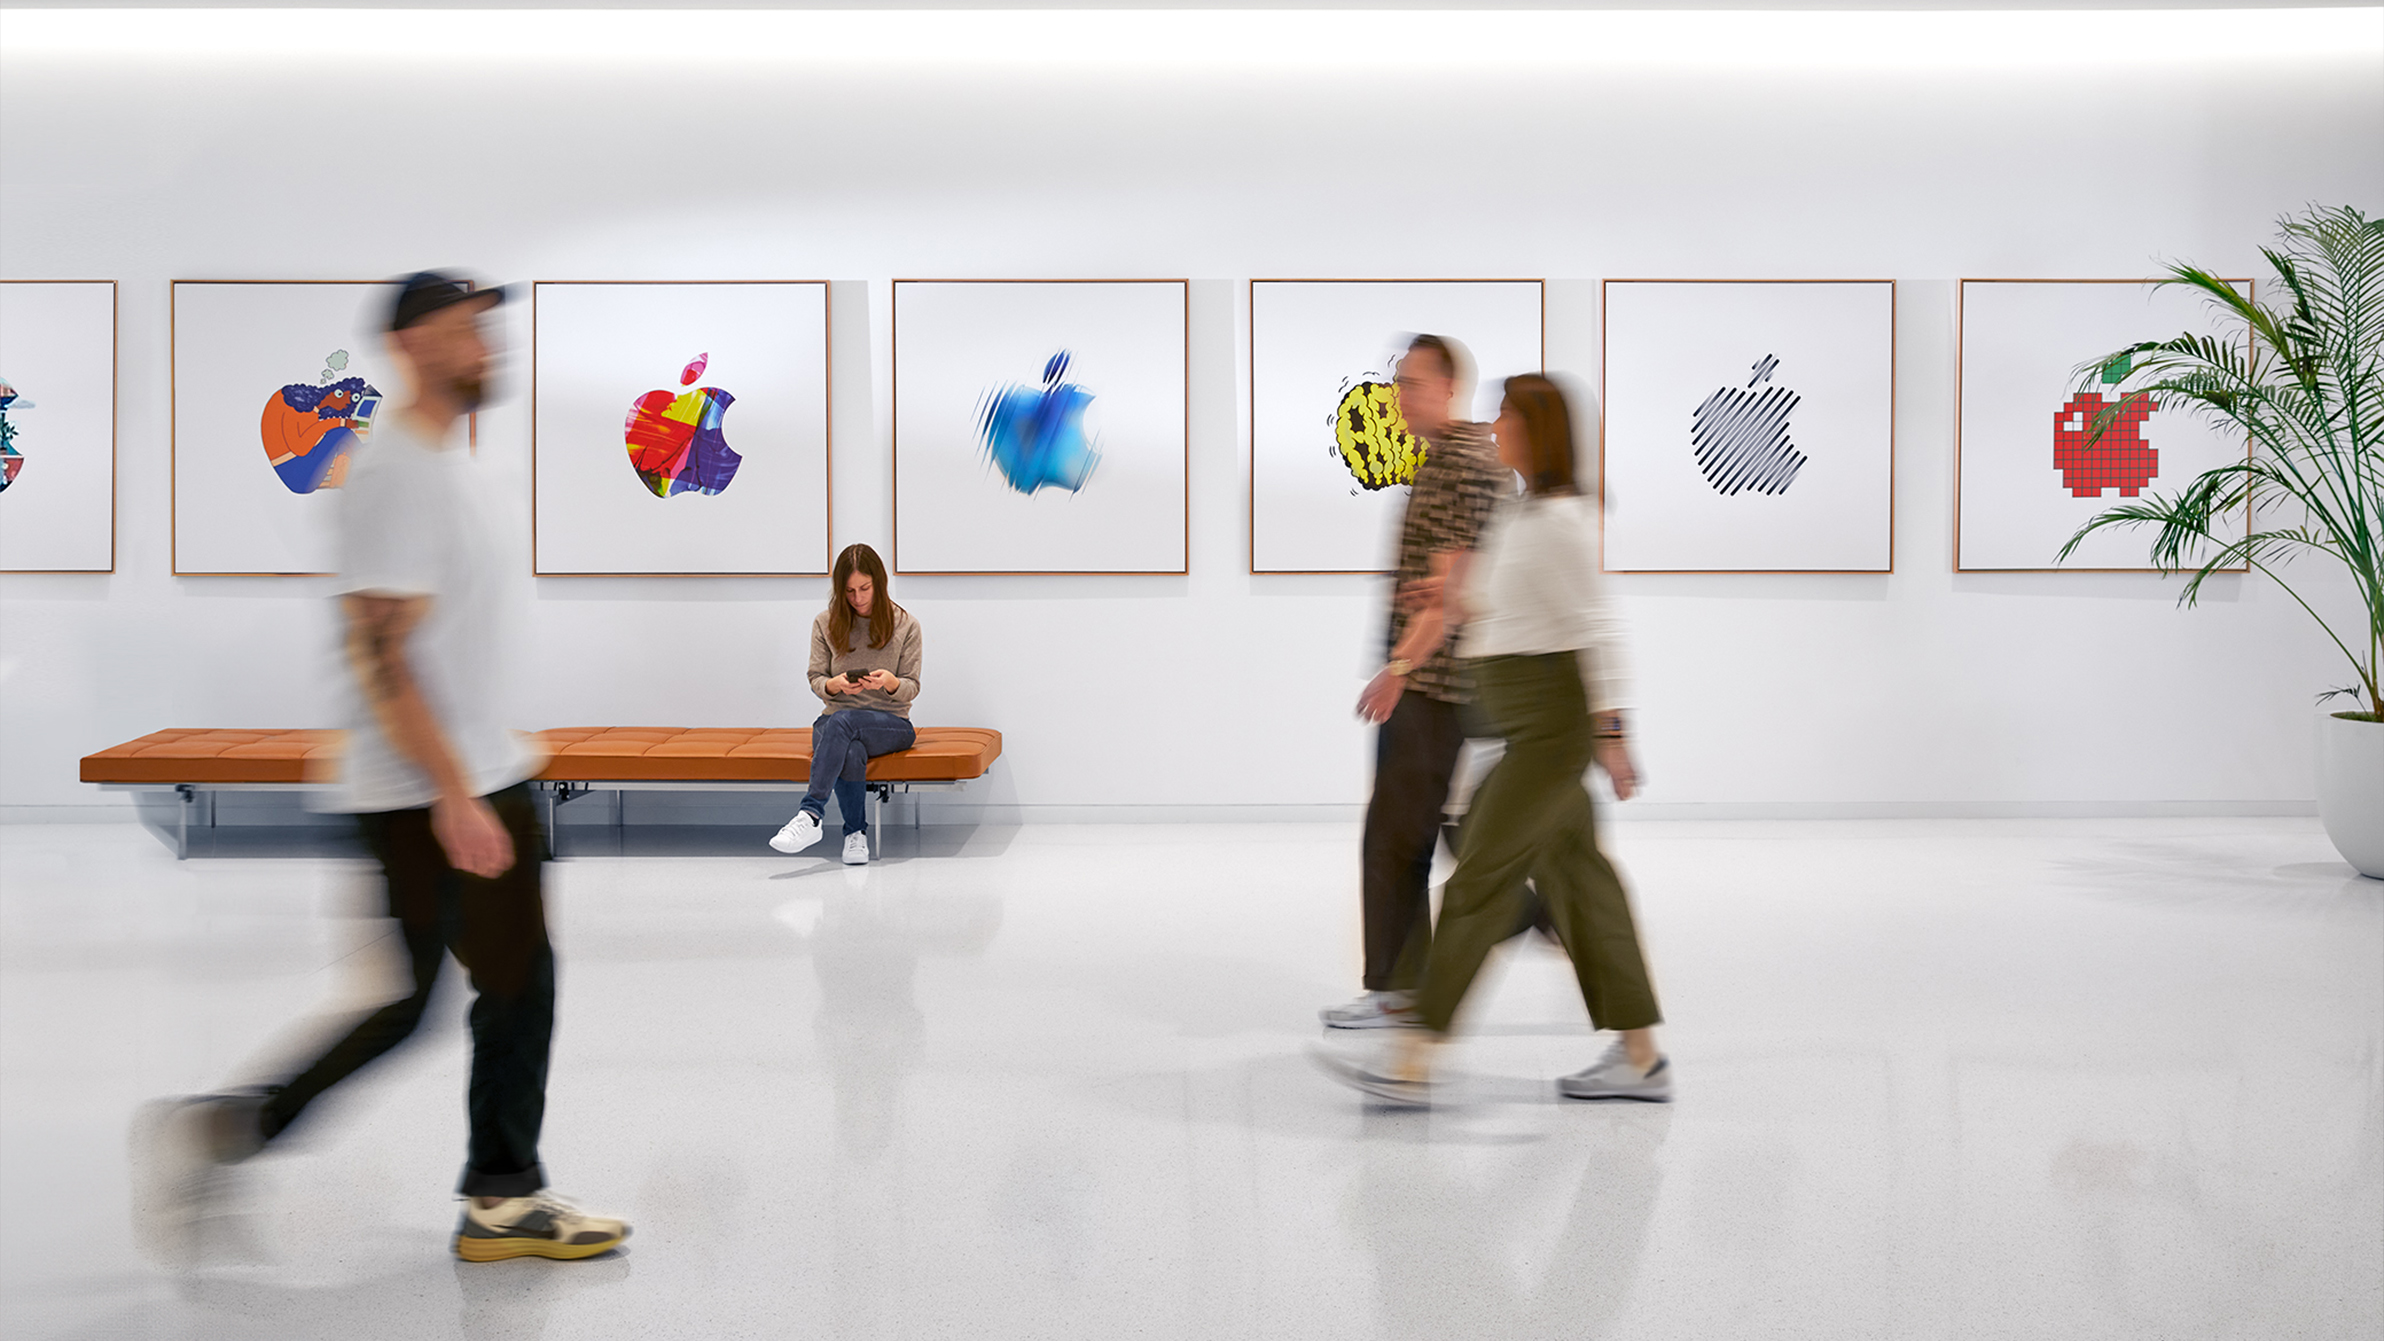 Tres colegas de Apple pasan caminando frente a una pared interior con logotipos coloridos de Apple, una cuarta integrante del equipo está sentada en una banca.